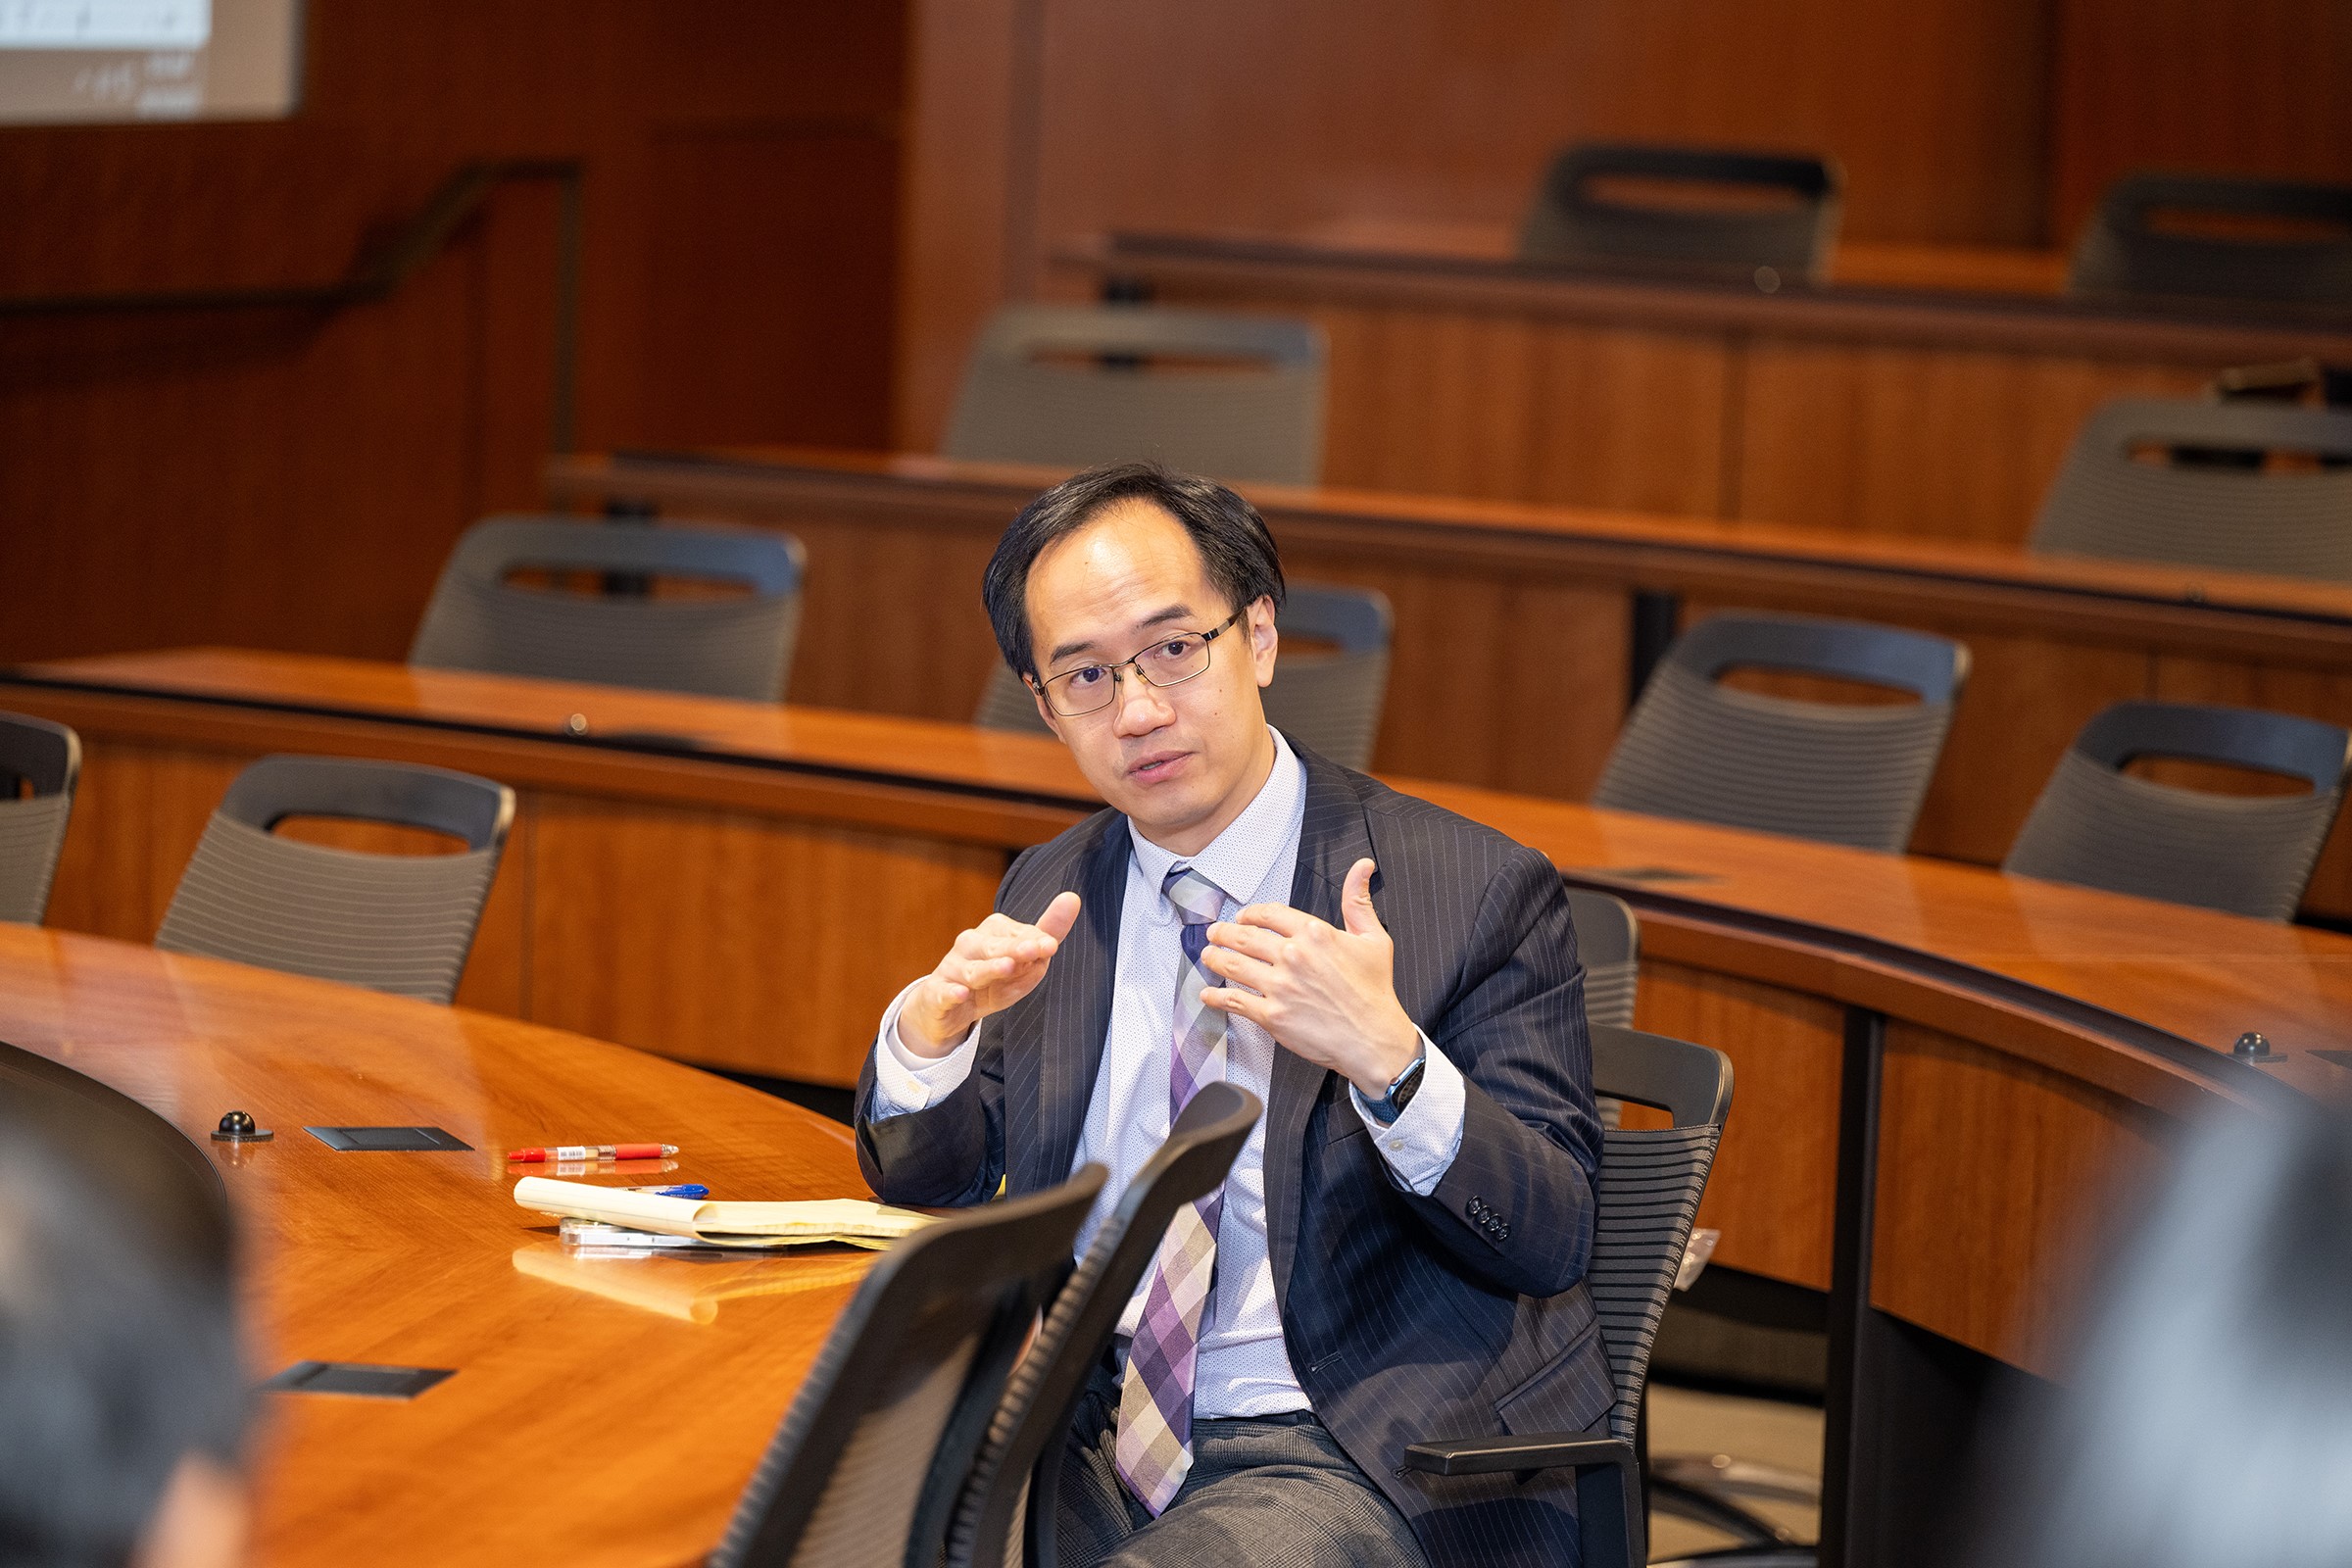 Professor Yun-chien Chang